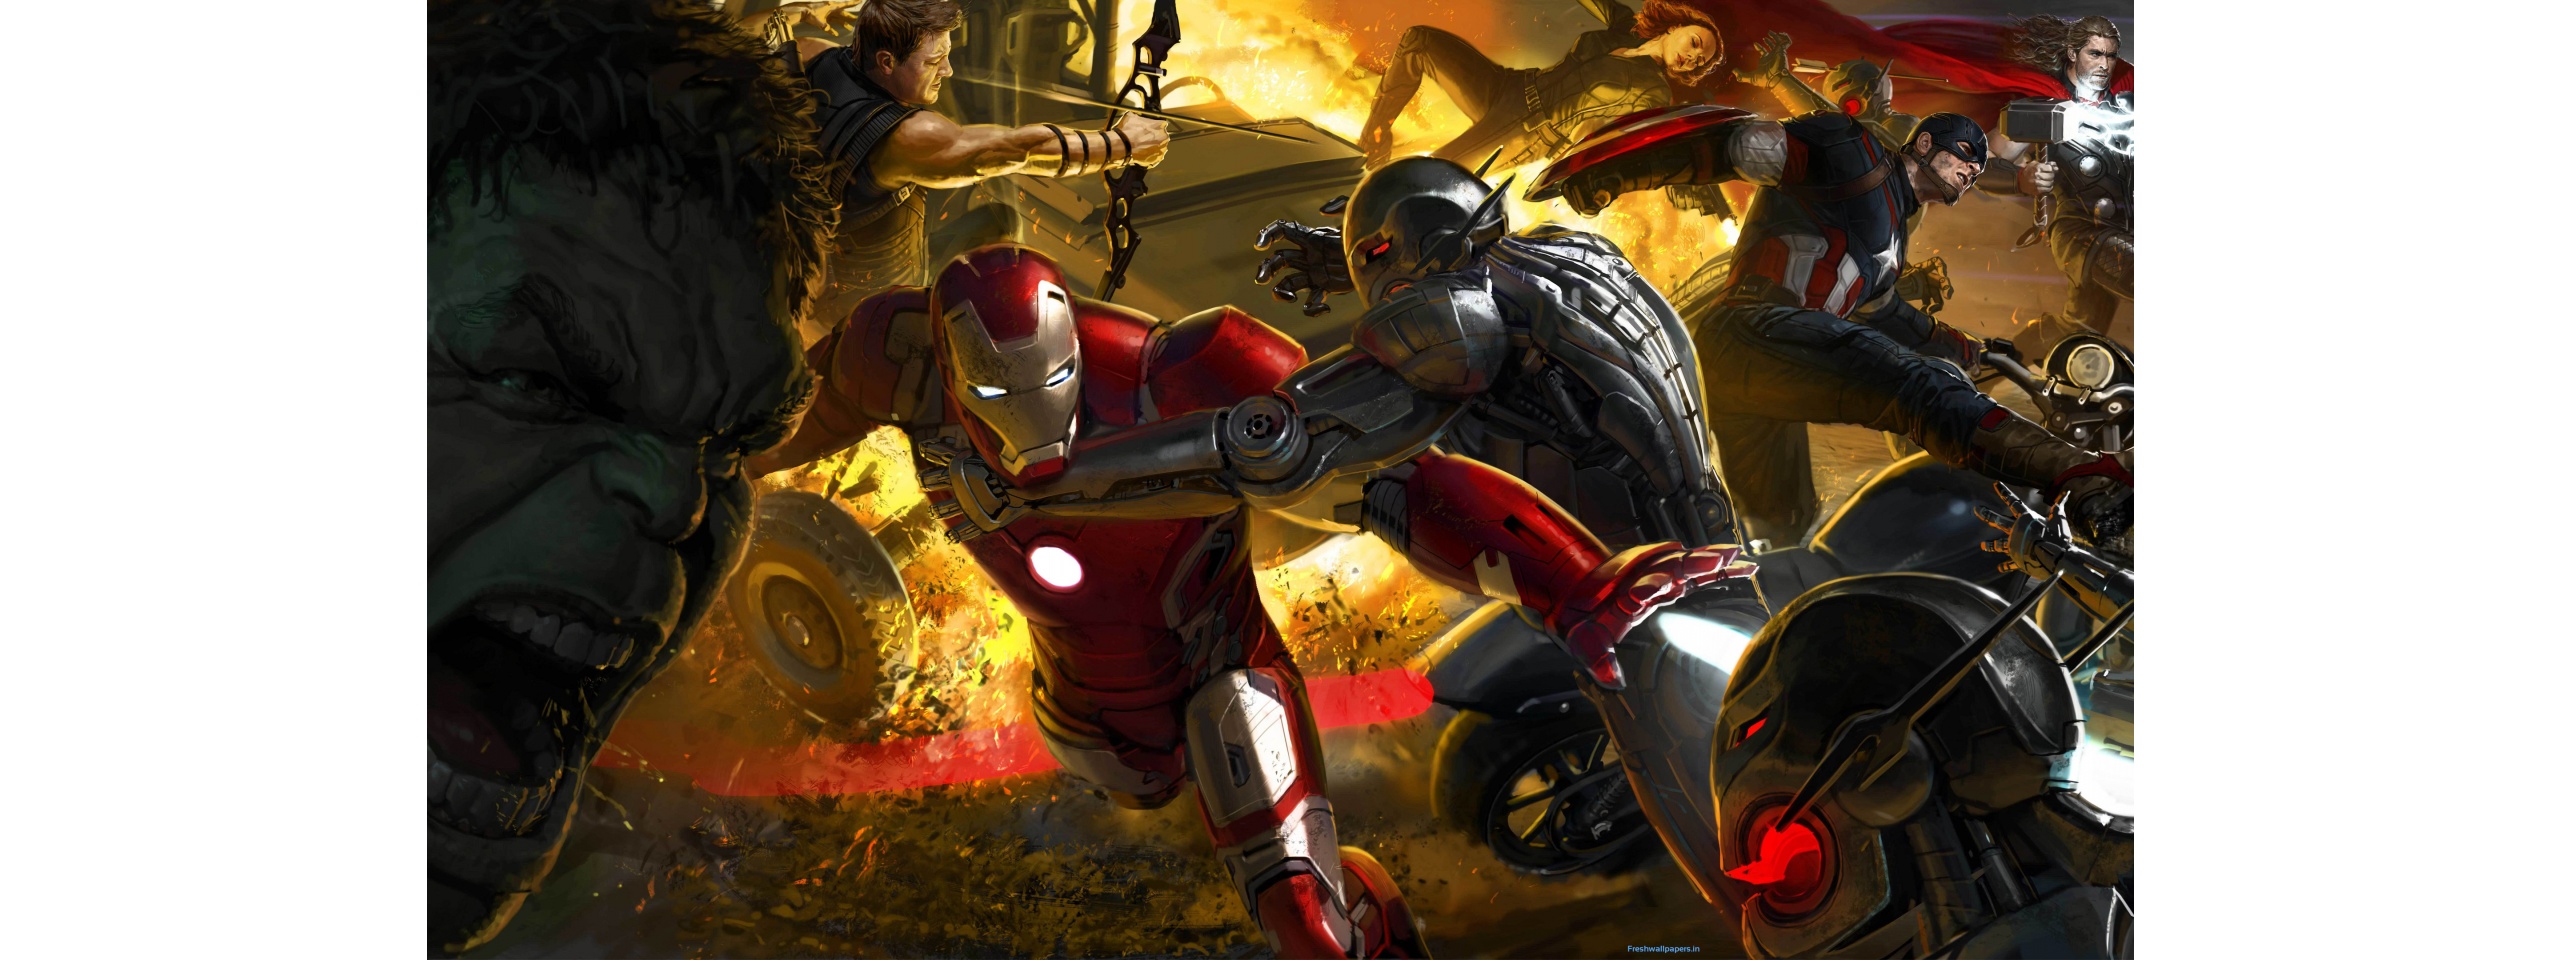 Avengers Infinity War Concept Wallpaper